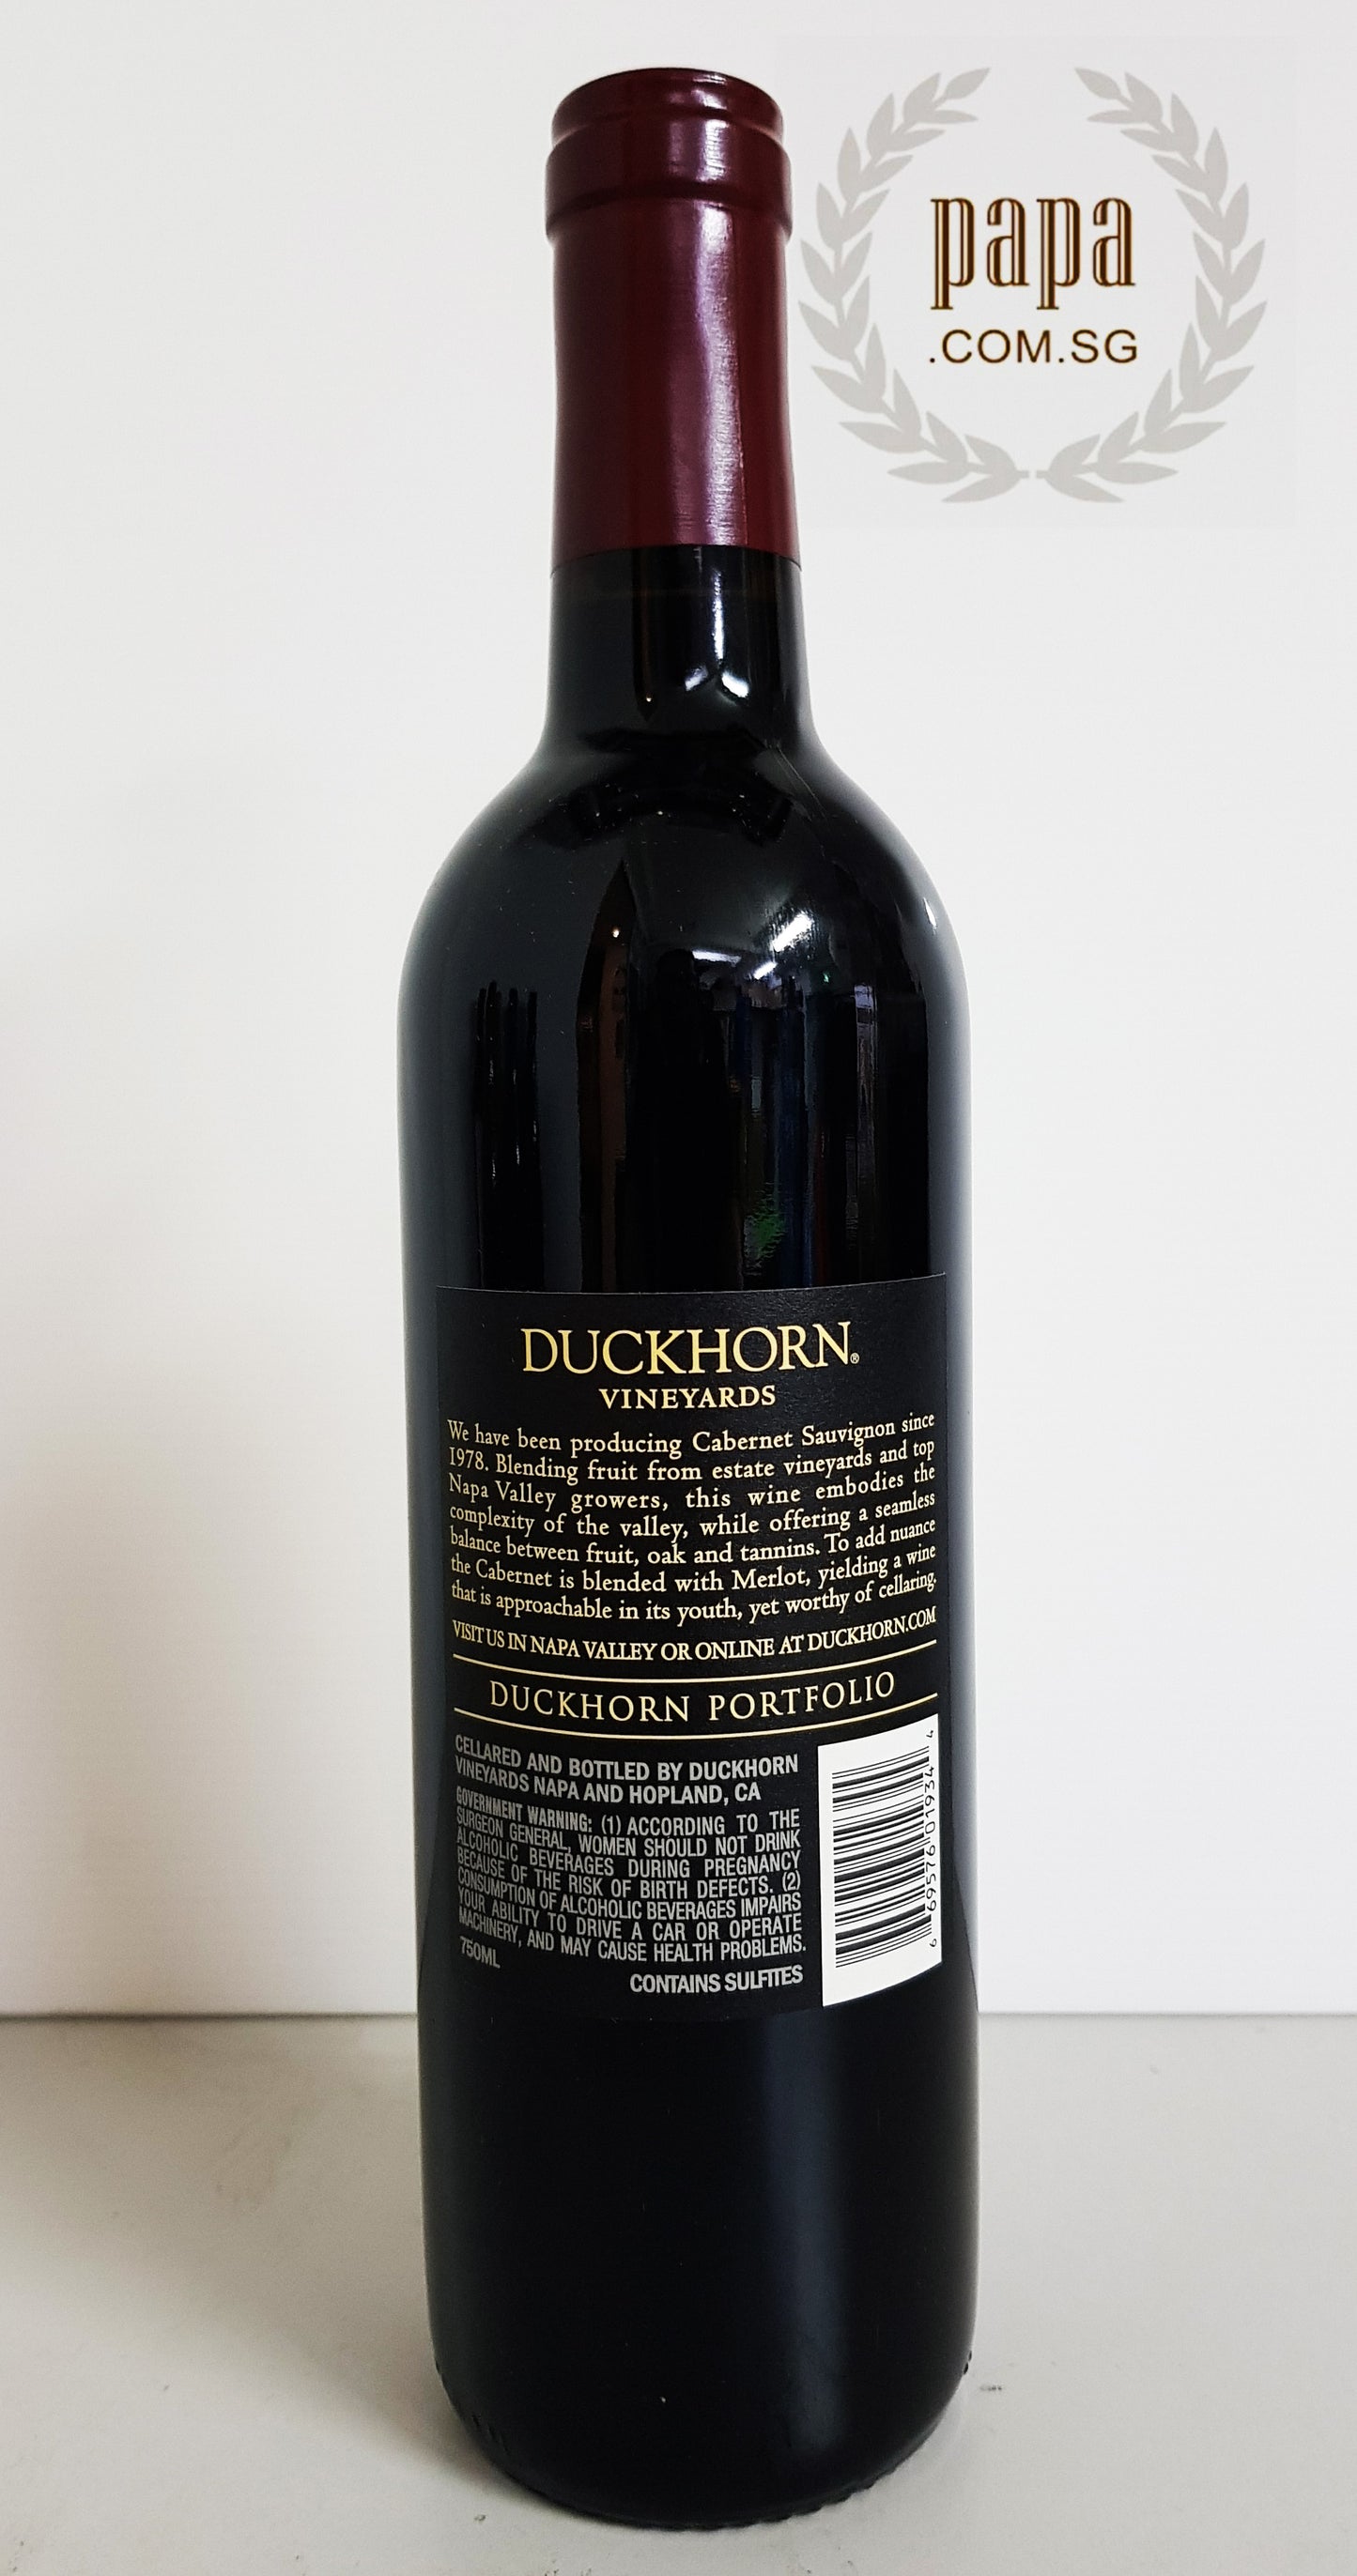 Duckhorn Cabernet Sauvignon 2018 (Sustainable Vinicultural)